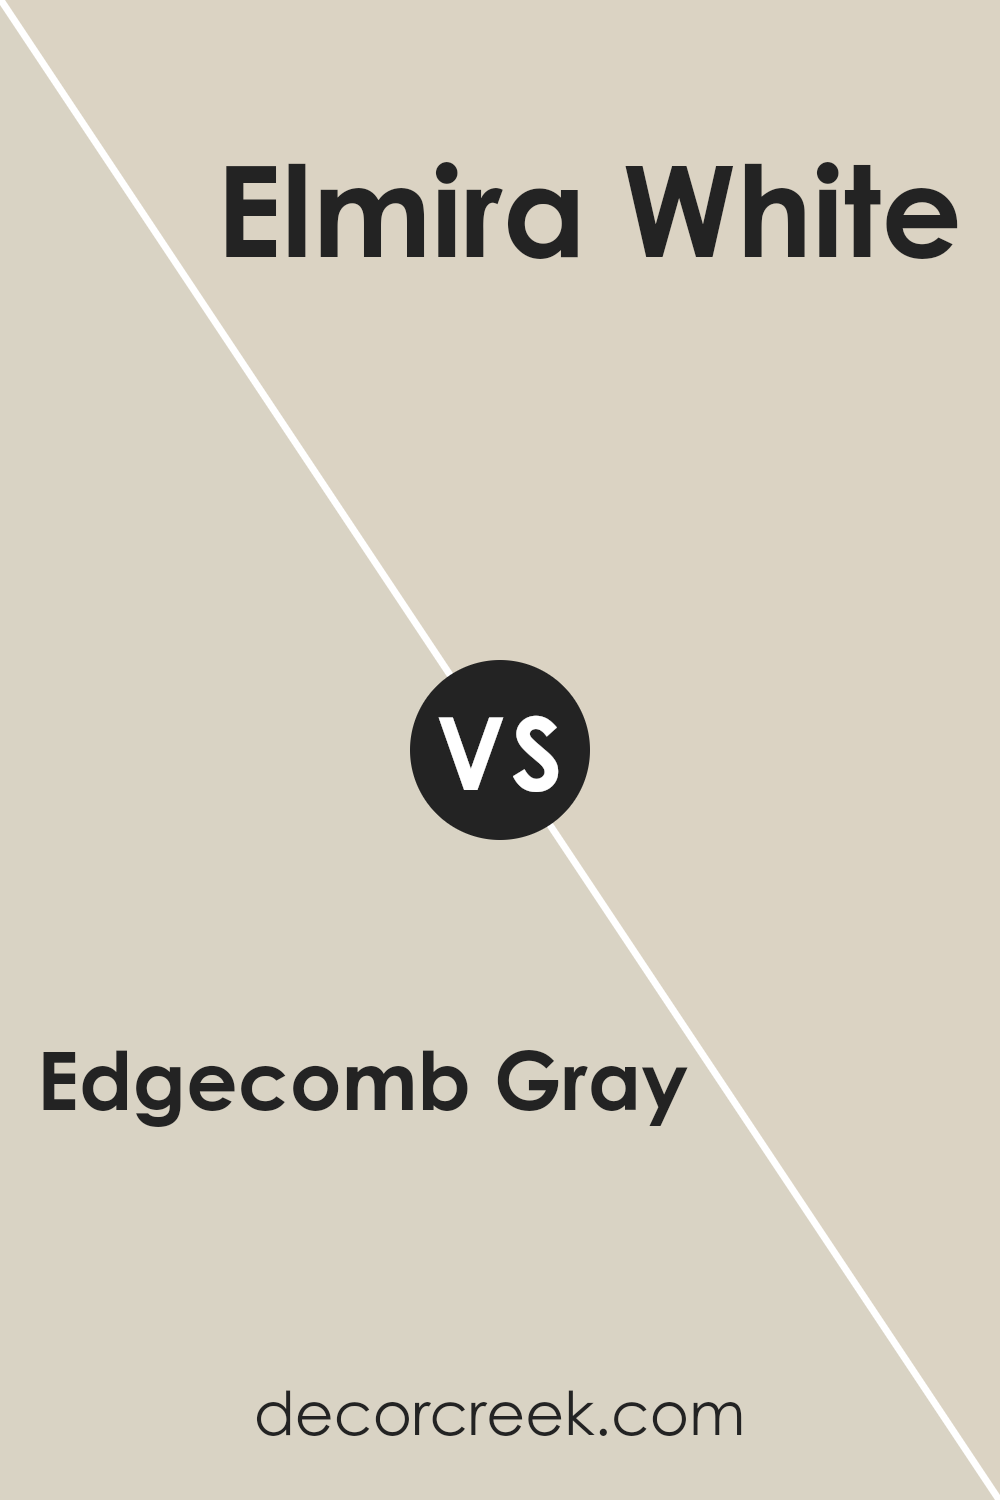 edgecomb_gray_hc_173_vs_elmira_white_hc_84